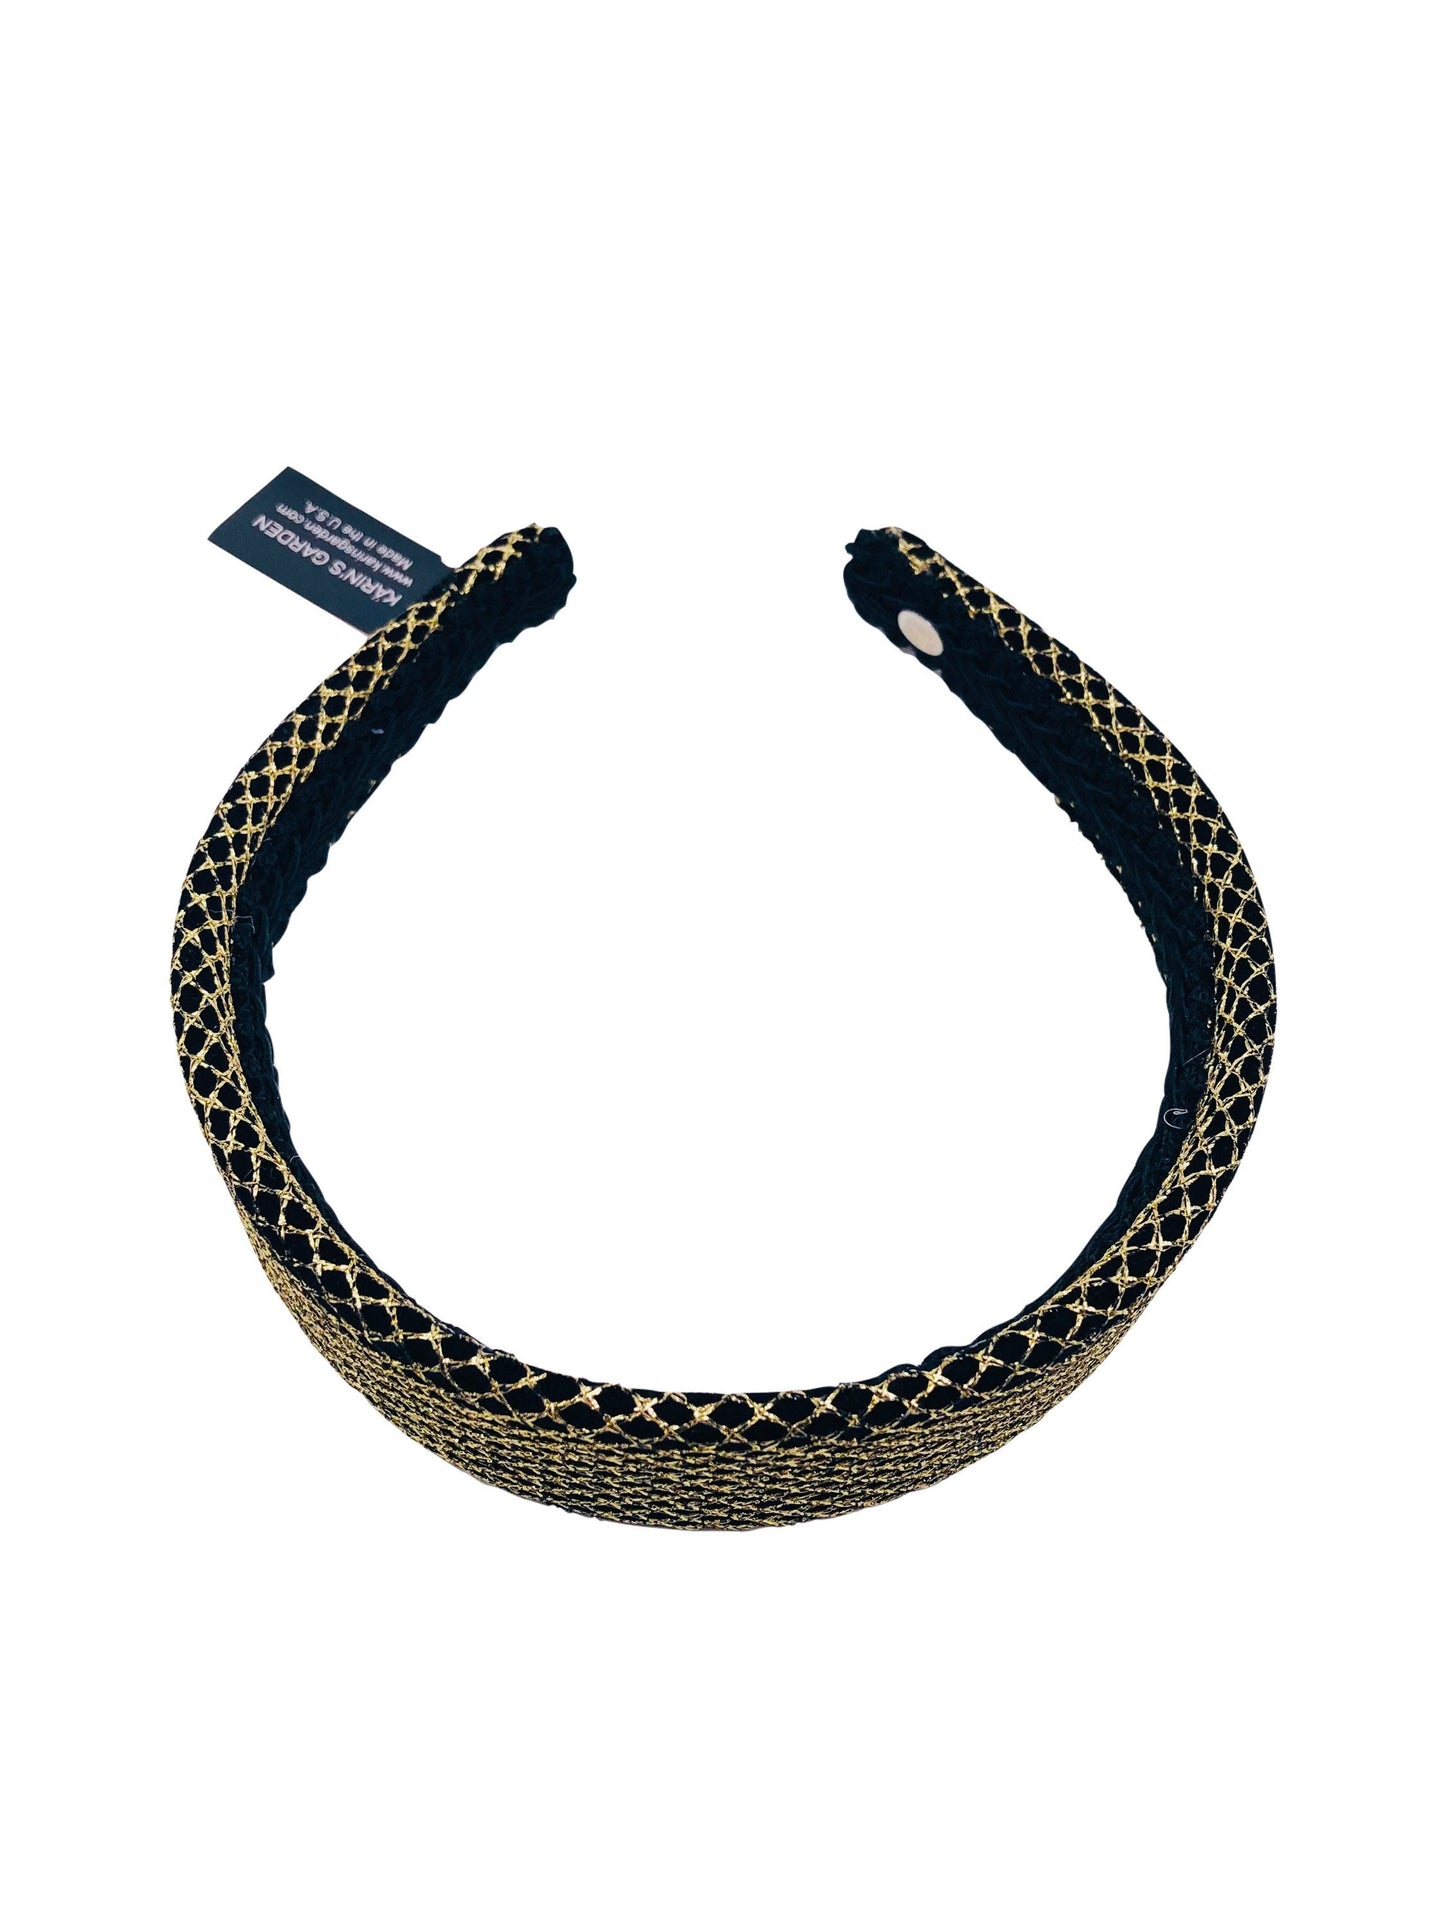 Karin's Garden 1.5" Metallic Mesh Headband.  Handmade in the USA.  In gold or silver over black velvet